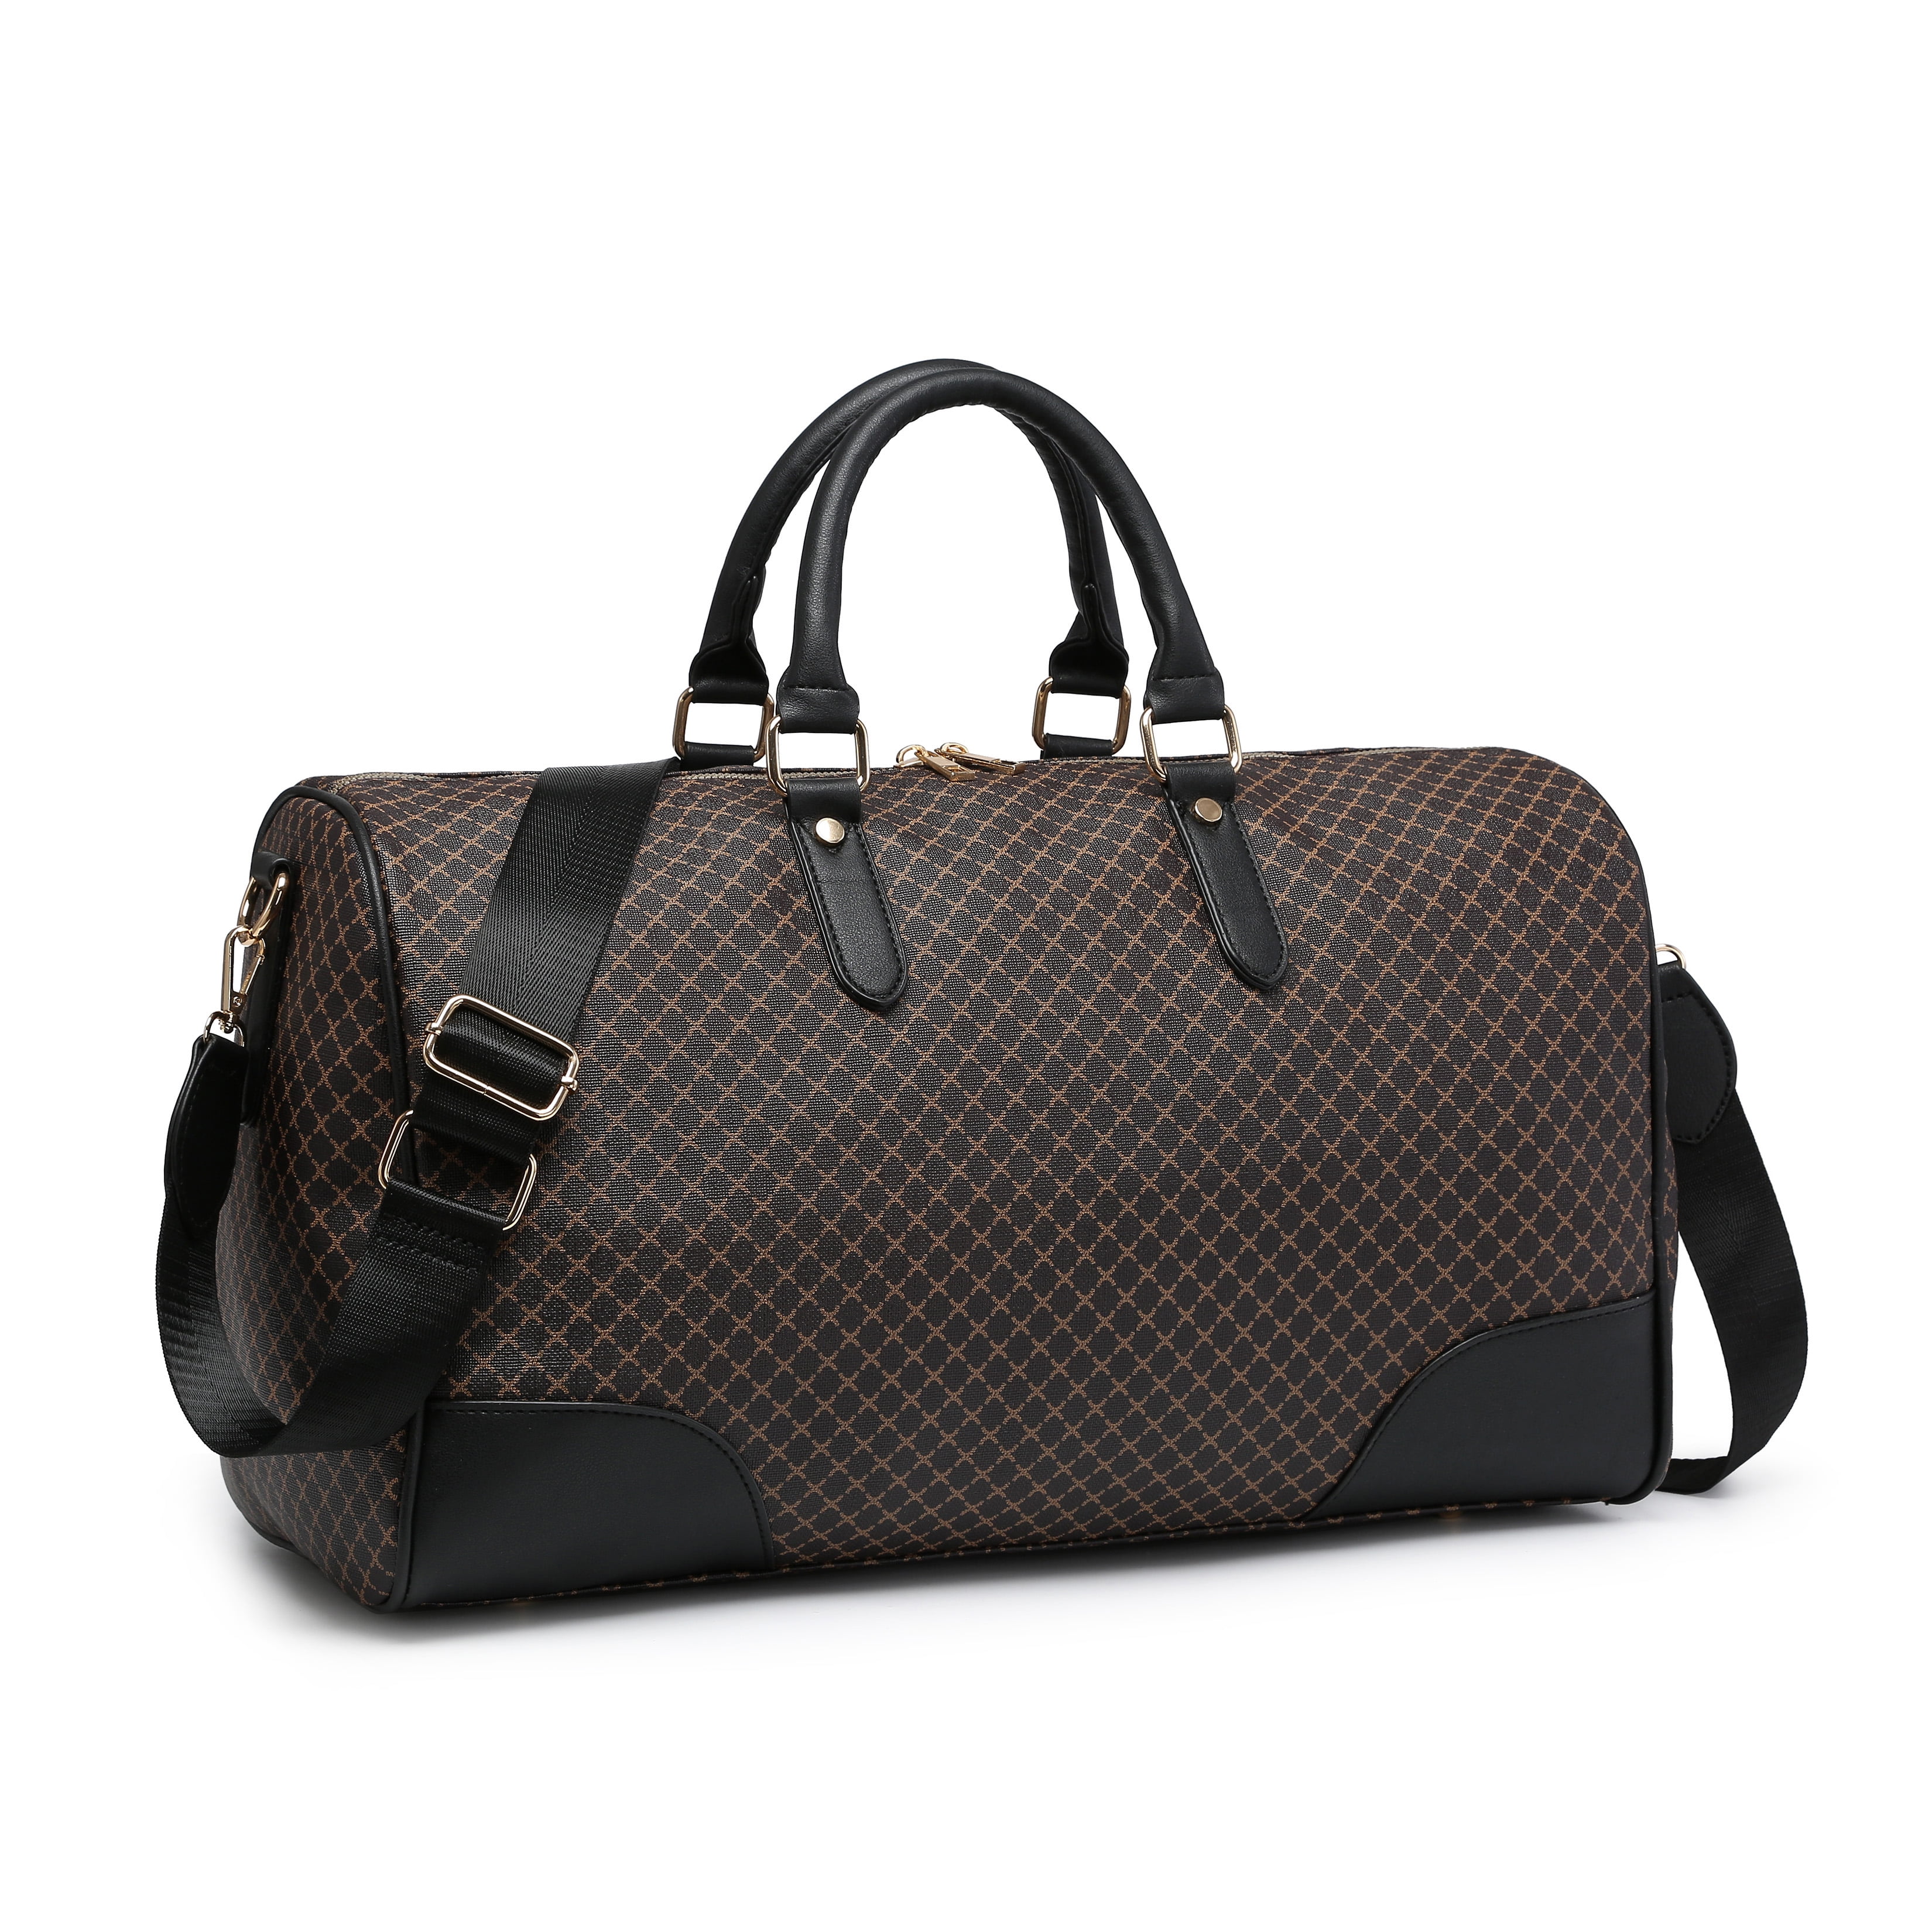 Black Men Travel Duffle Bags Waterproof PU Leather Handbags Shoulder Bag  For Women Man Office Tote Large Capacity Weekend Bag X2